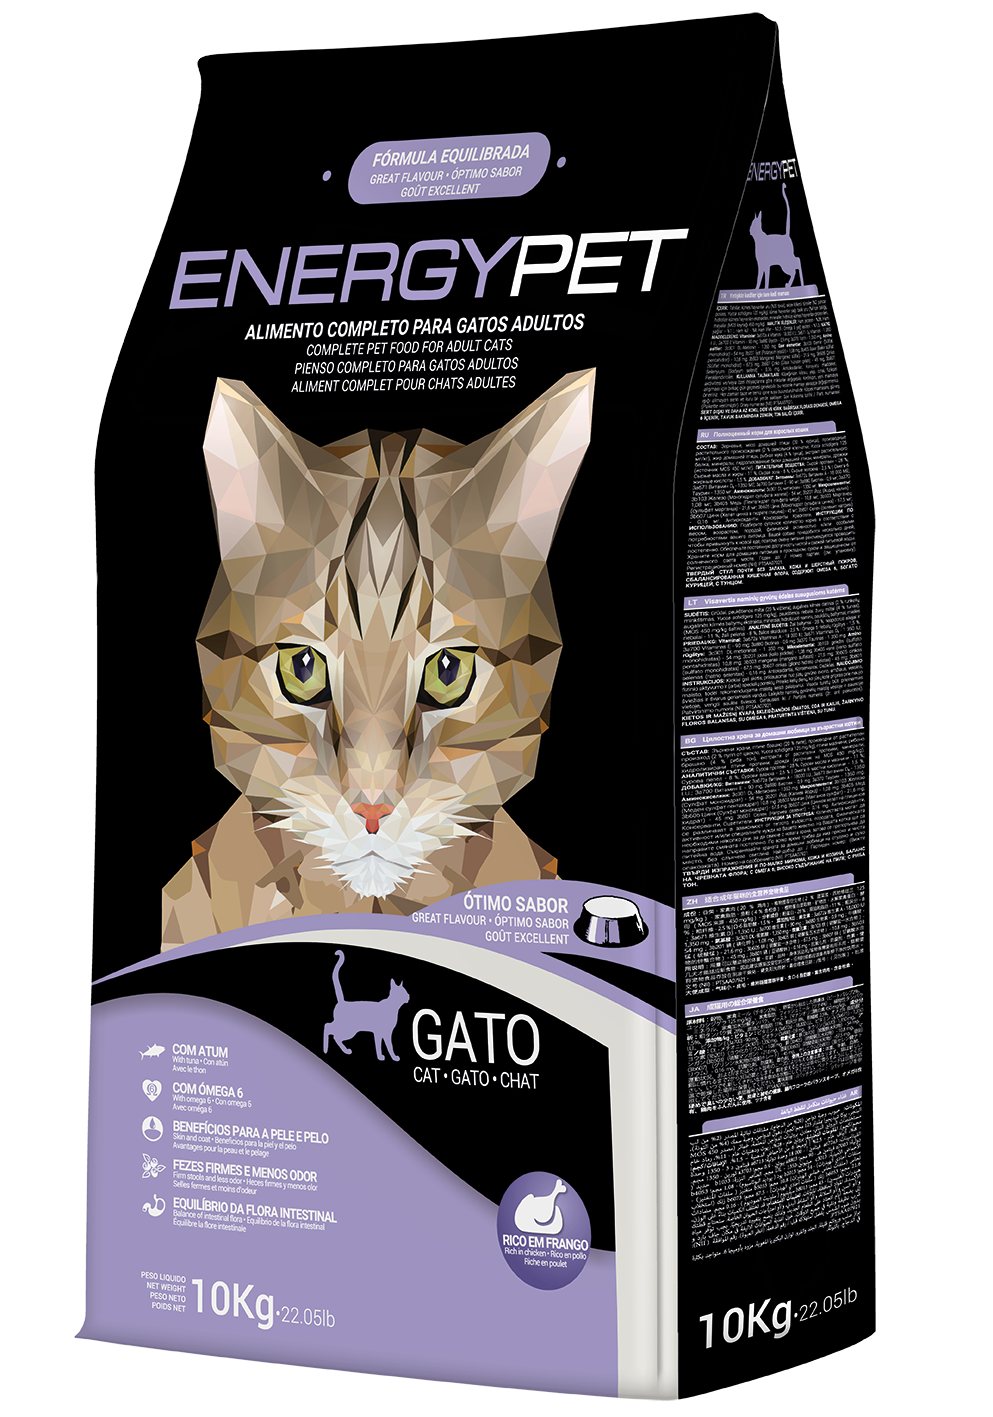 Energy Pet Katze 10kg - Chrysdietetic